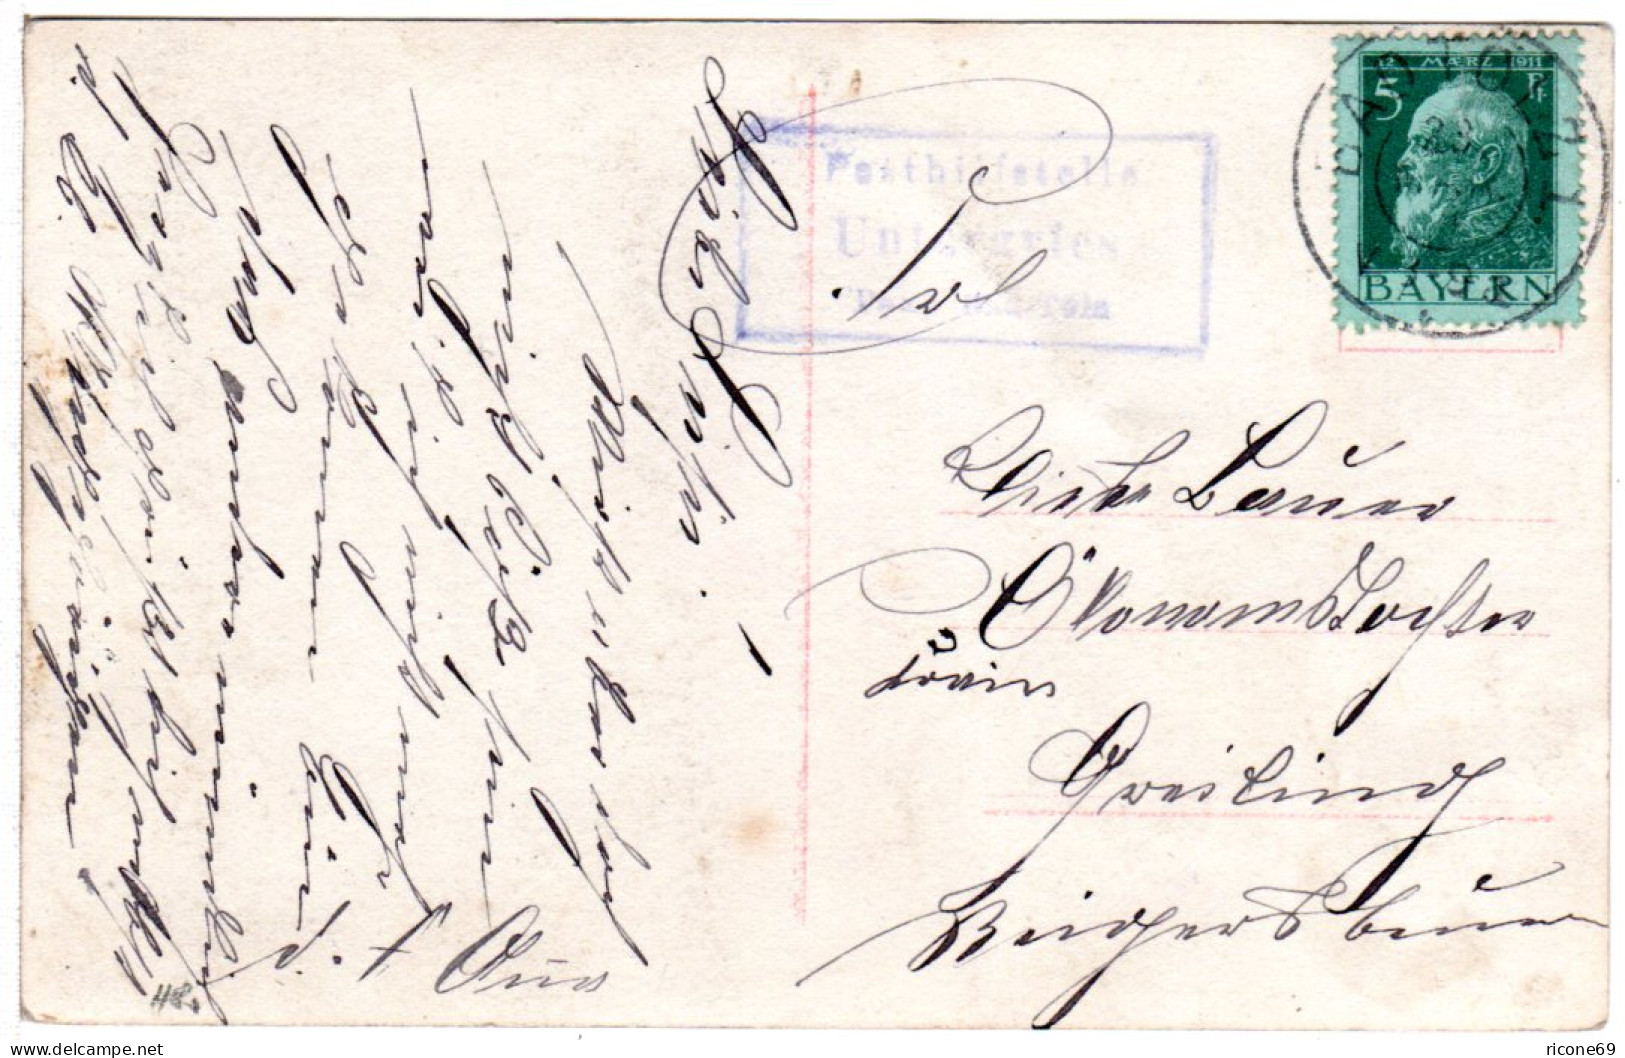 Bayern 1911, Posthilfstelle UNTERGRIES Taxe Bad Tölz Auf Karte M. 5 Pf. - Lettres & Documents